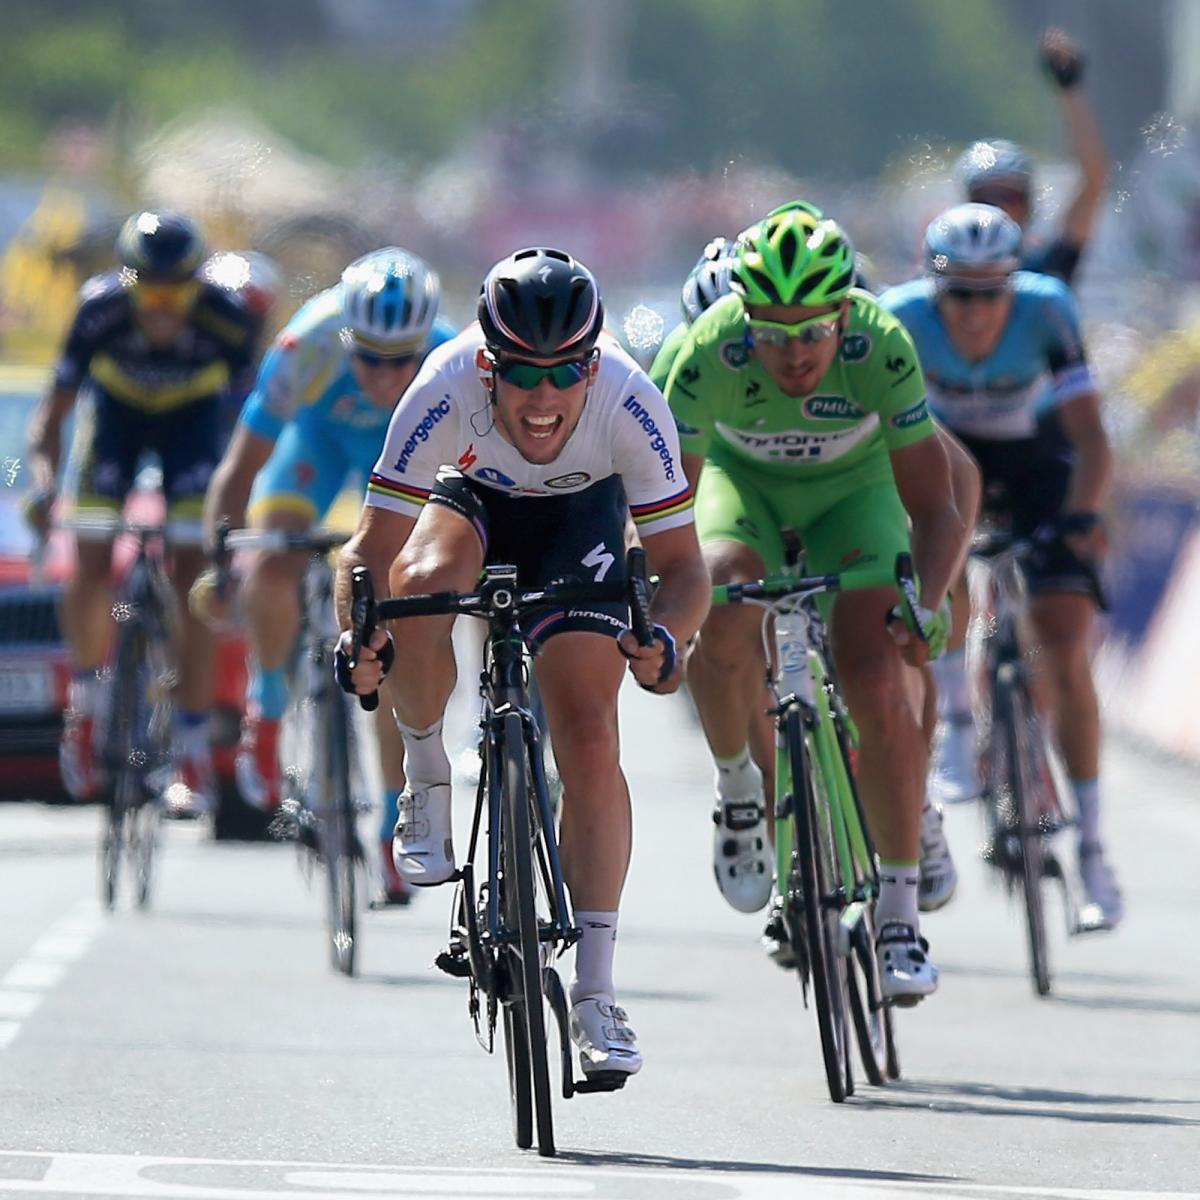 Tour de France 2013: This Year's Race Should Be Last to Prohibit Women ...